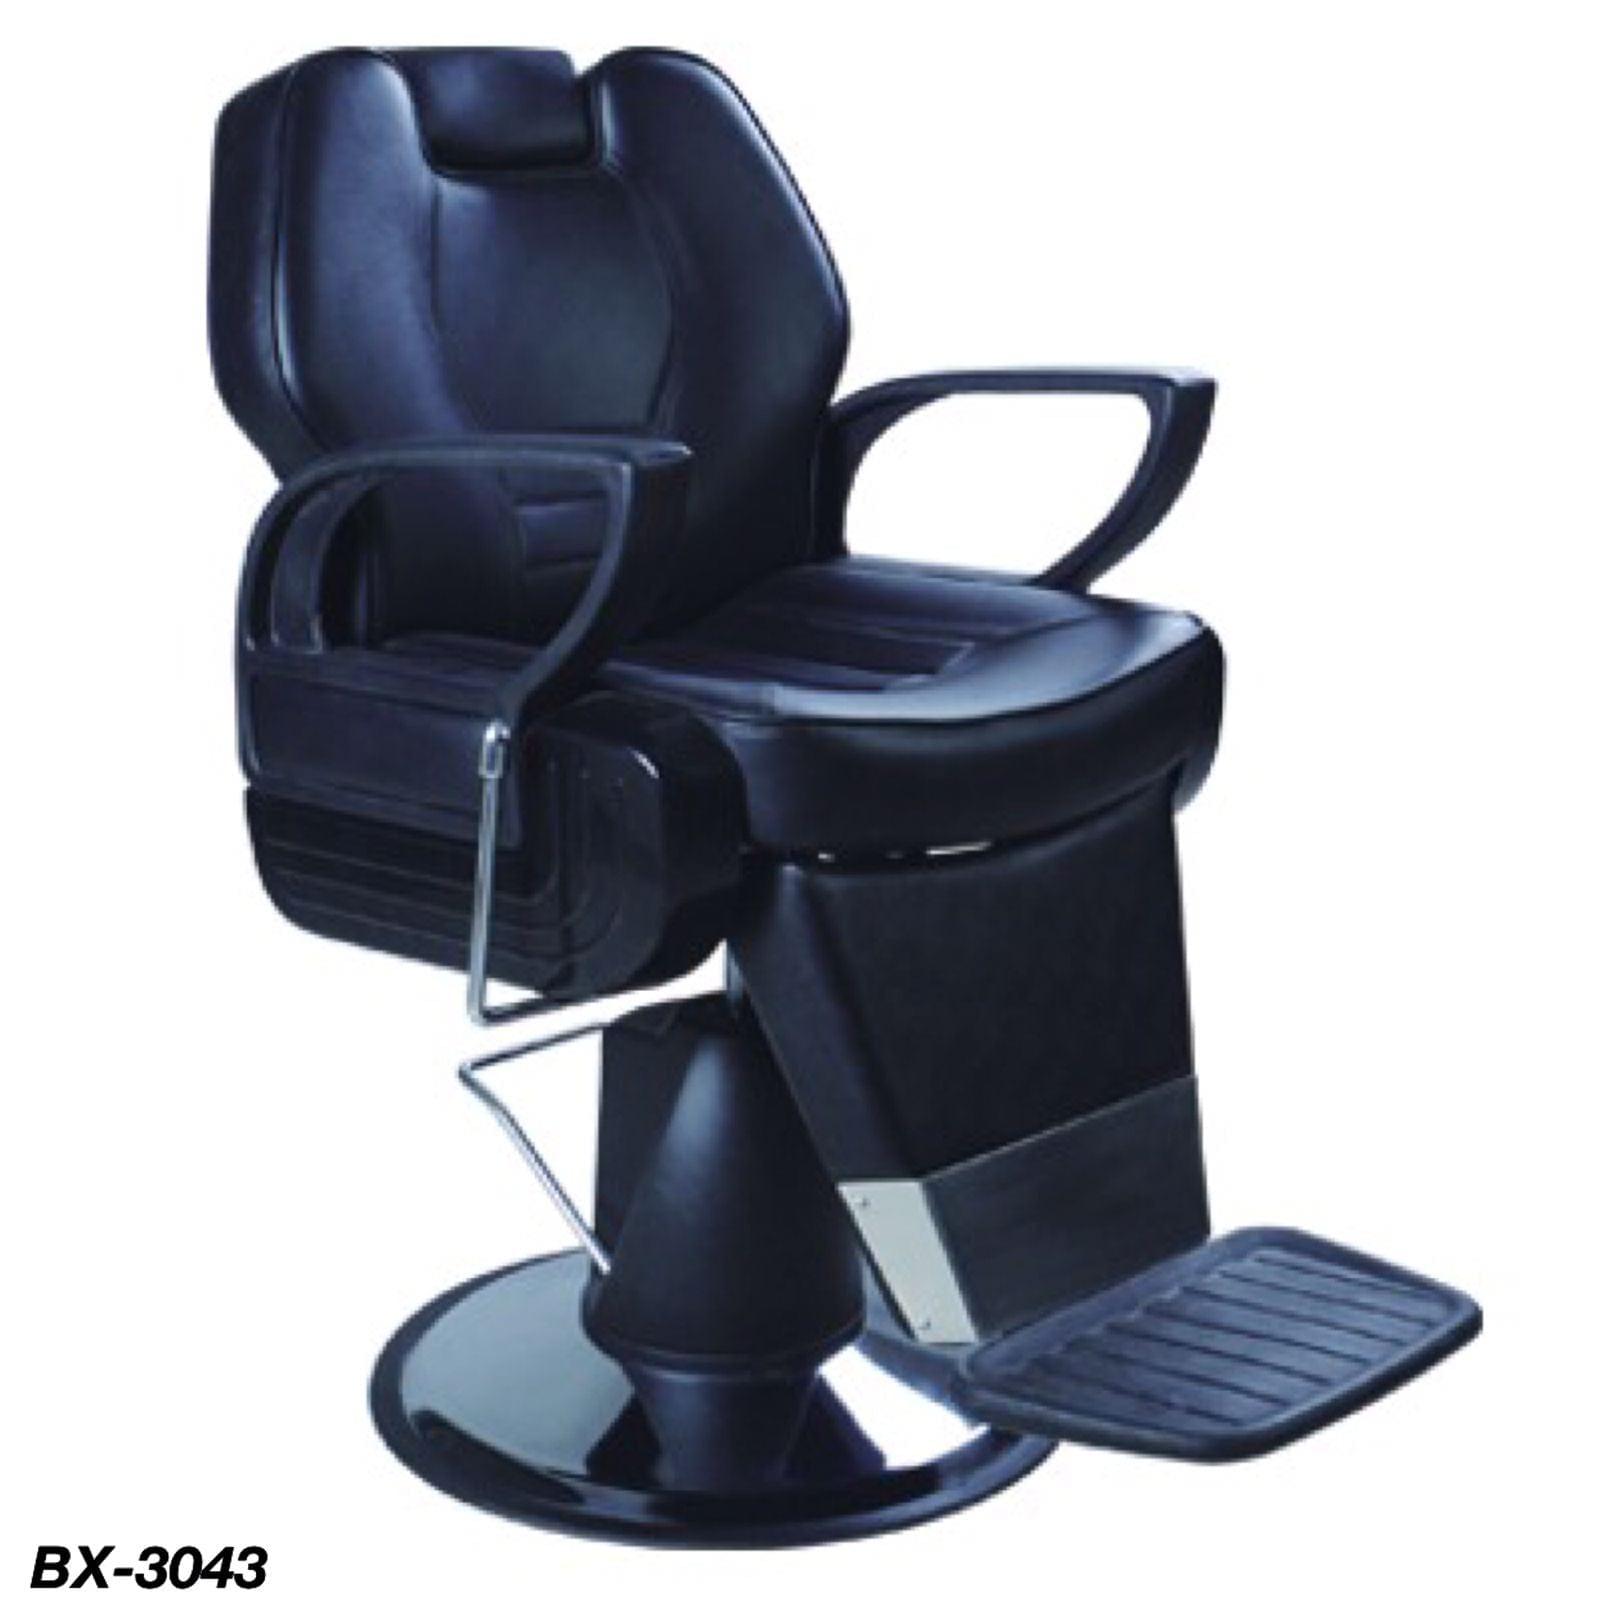 Globalstar Professional Babrber Chair BX-3043